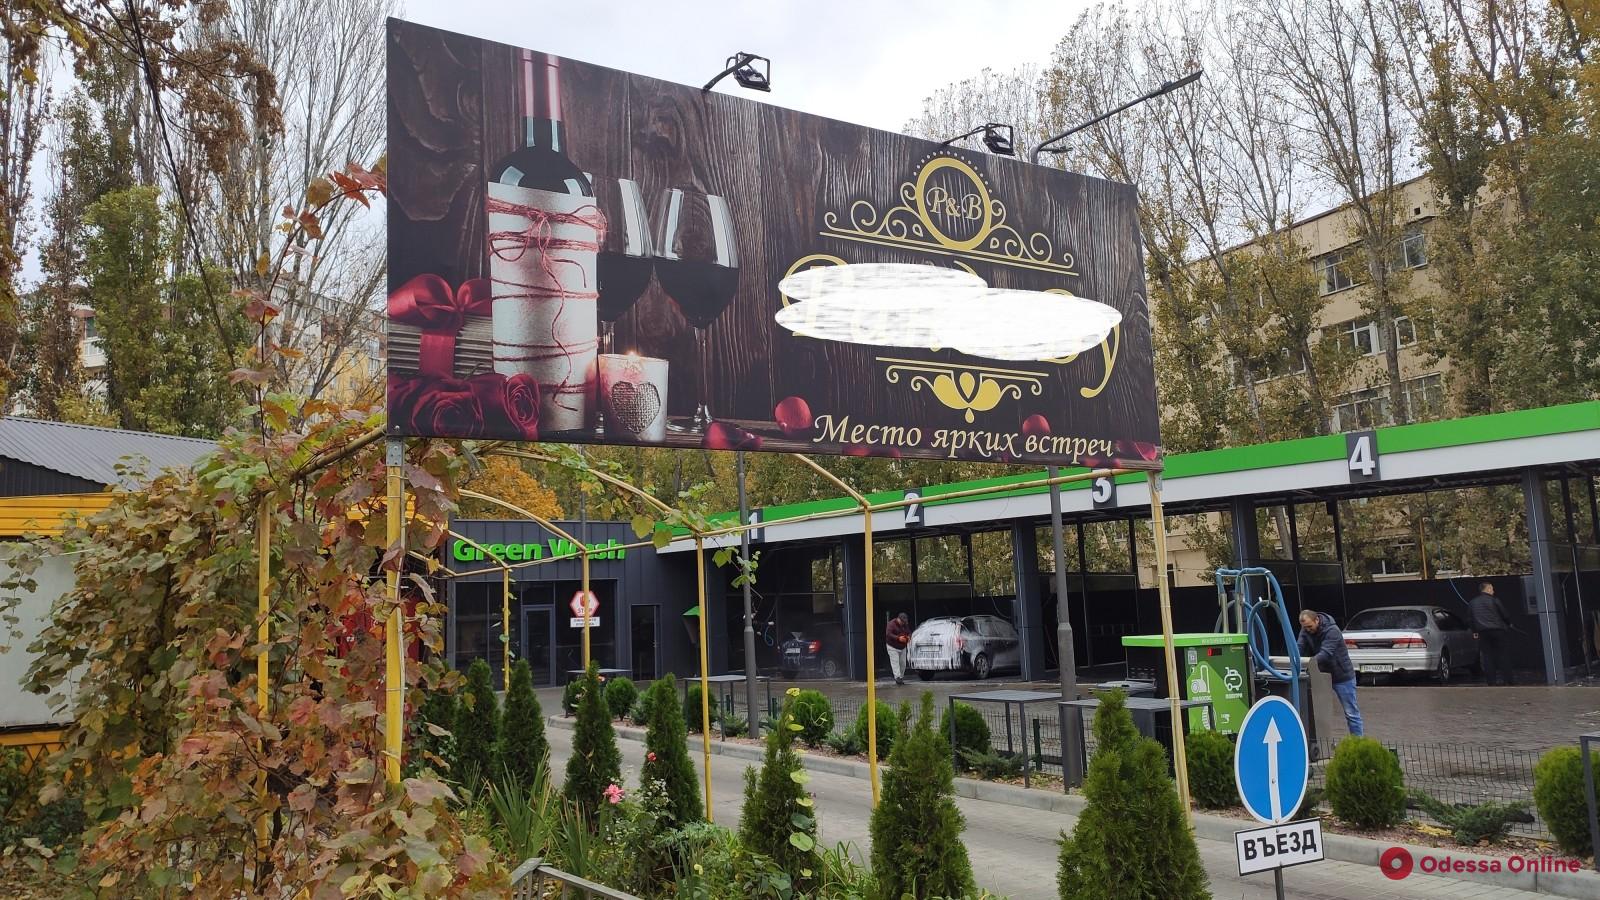 Аптека, сладости и пиво: в Одессе разобрали больше 80 незаконных рекламных вывесок